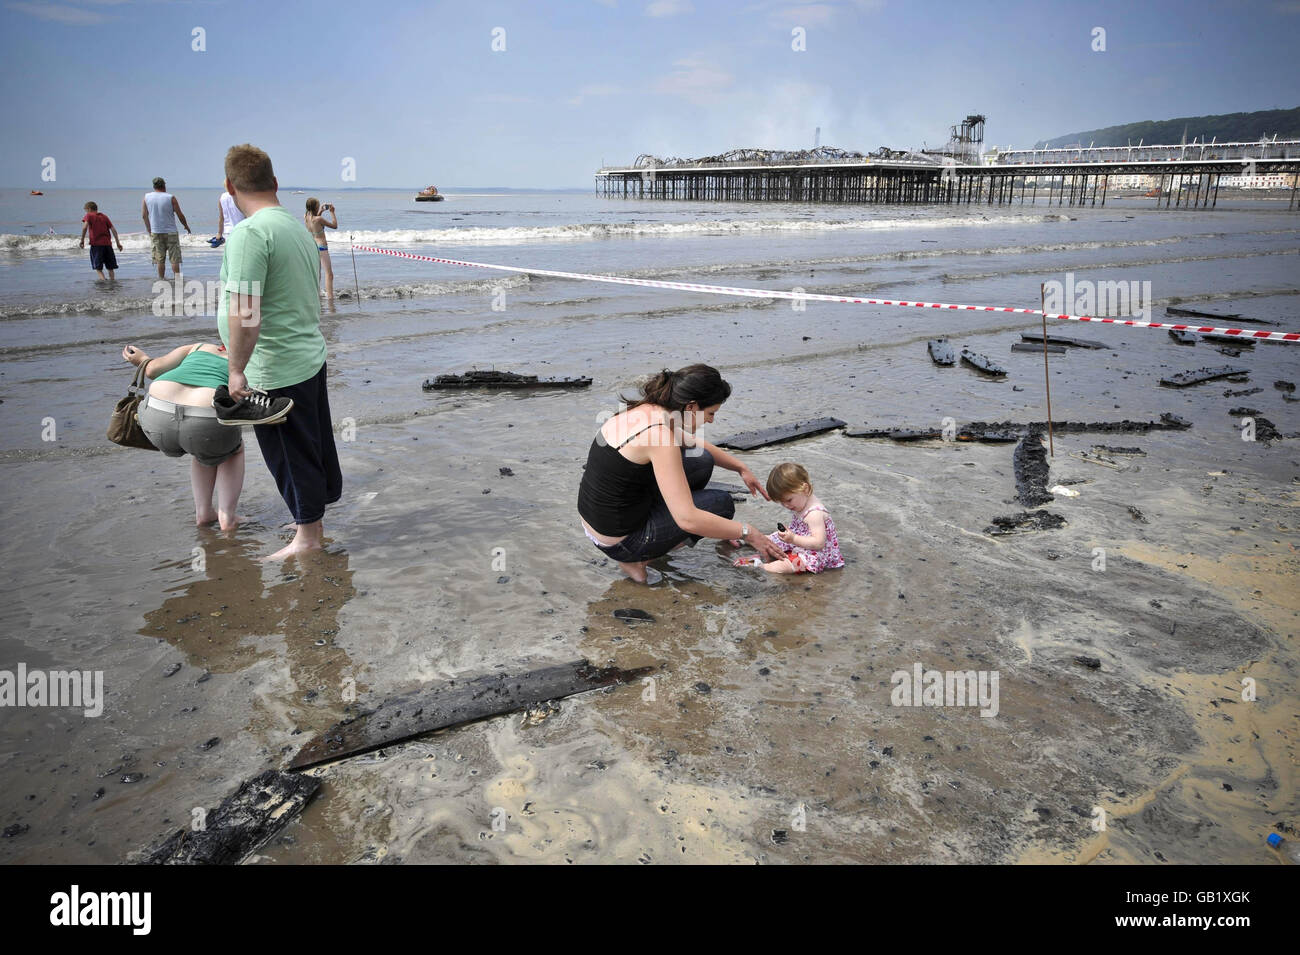 Les vacanciers s'en prennent à la plage à côté du Grand Pier à Weston-super-Mare, où des débris brûlés sont lavés après un incendie majeur. Banque D'Images